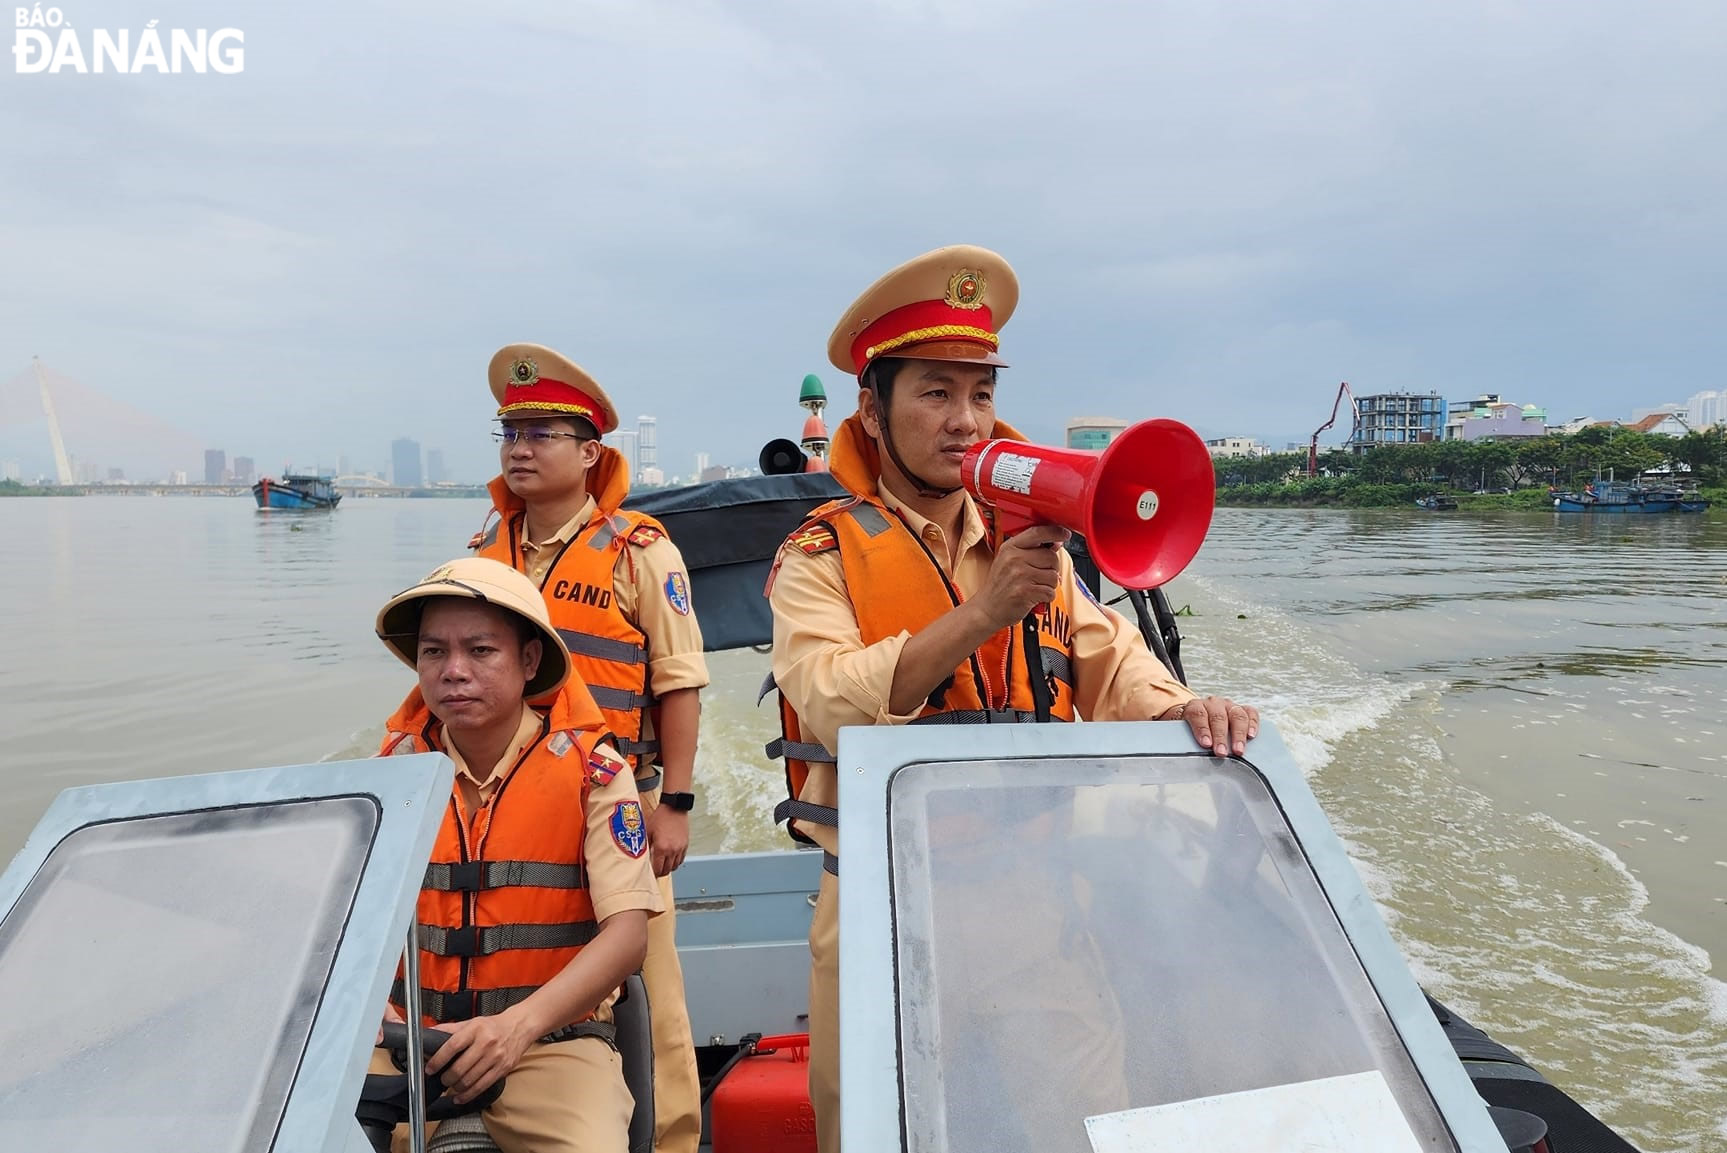 Lực lượng Cảnh sát giao thông đường thủy thuộc Phòng Cảnh sát giao thông Công an thành phố tăng cường tuần tra kiểm soát, tuyên truyền nhắc nhở tàu thuyền neo đậu trên sông Hàn.